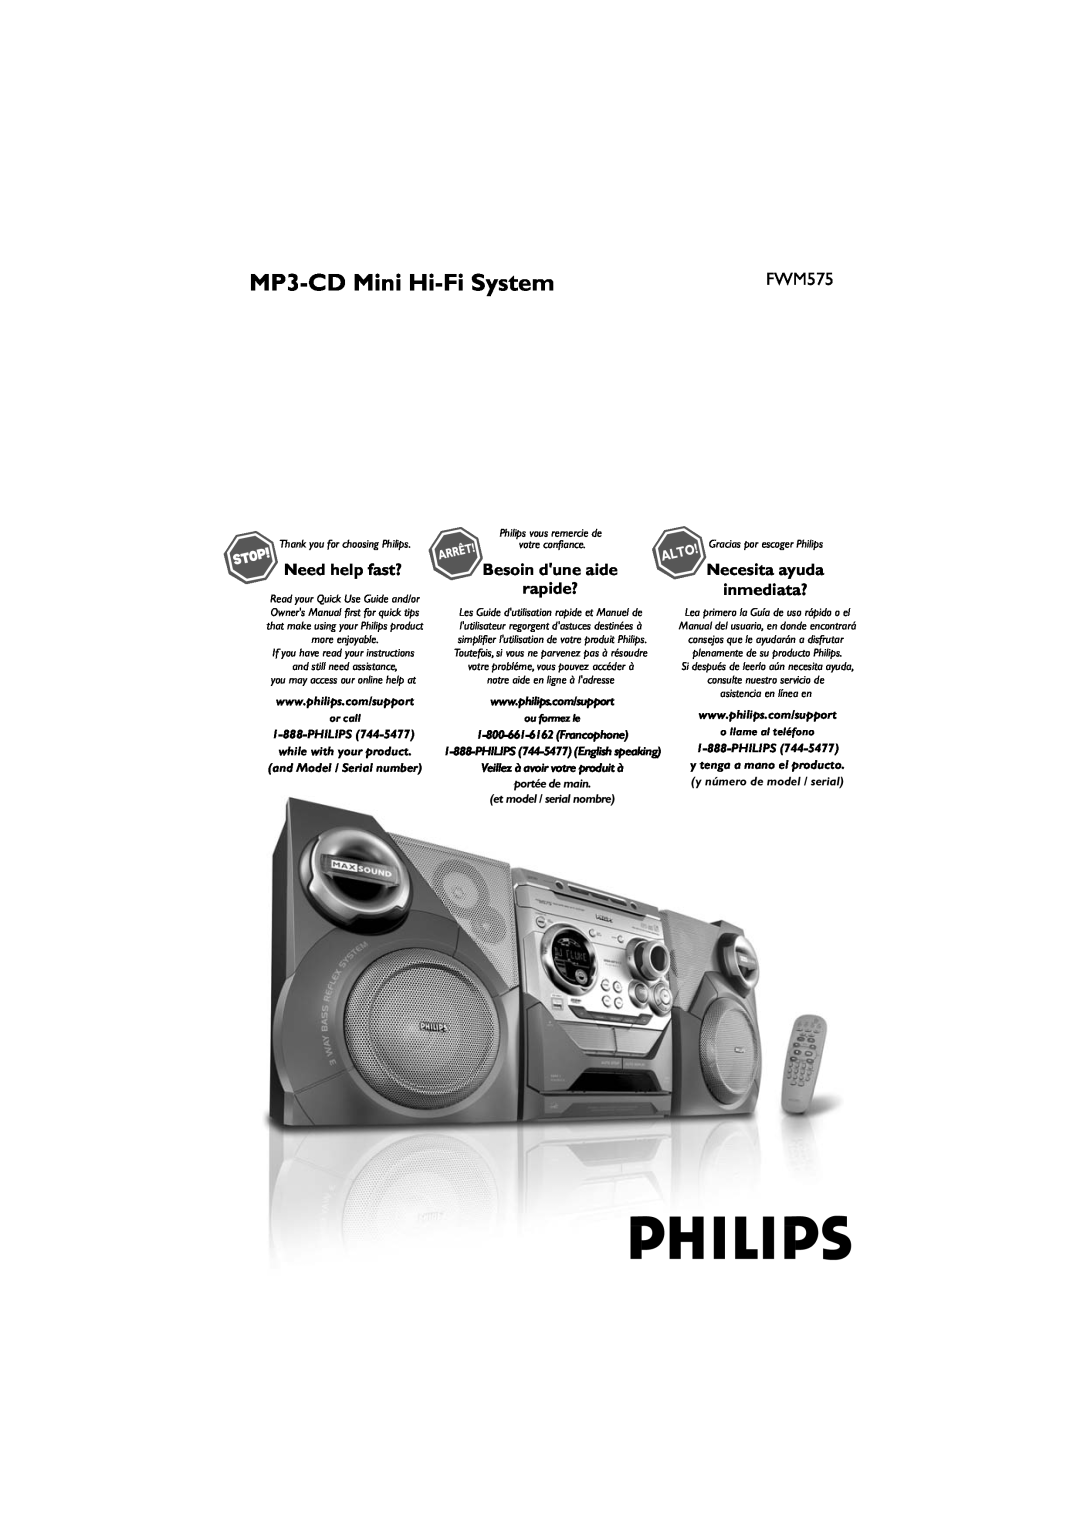 Philips FWM575/37B owner manual MP3-CDMini Hi-FiSystem, Besoin dune aide, Necesita ayuda inmediata?, rapide?, or call 